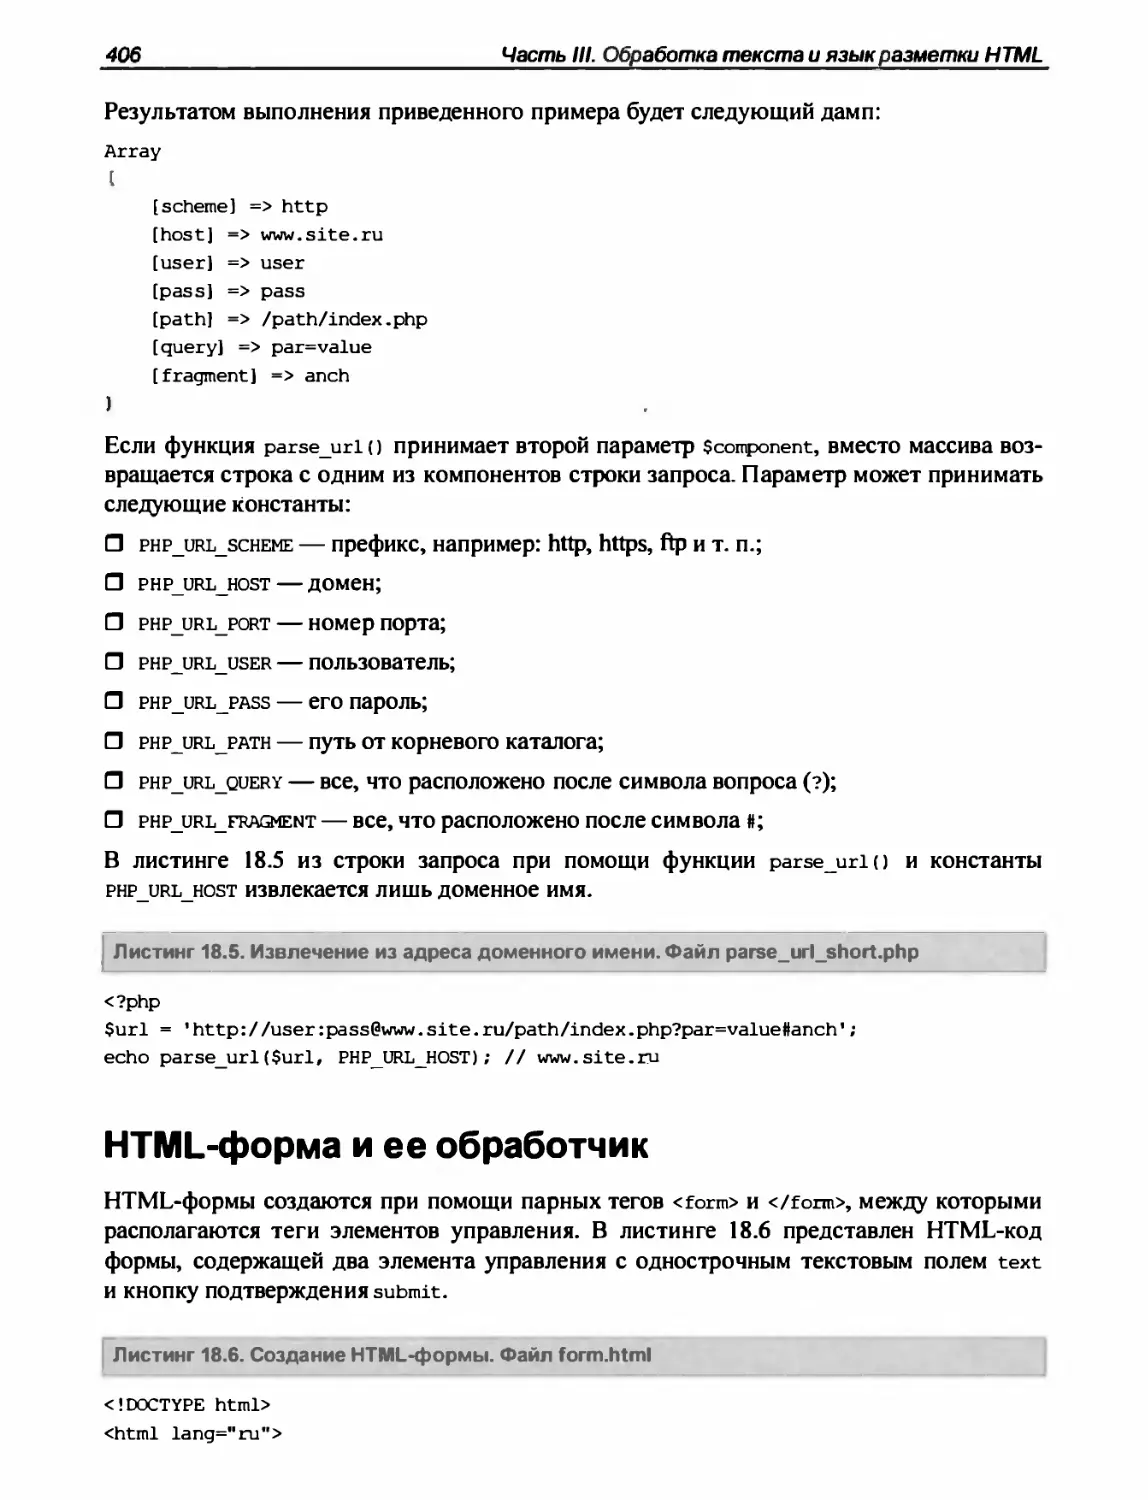 HTML-форма и ее обработчик